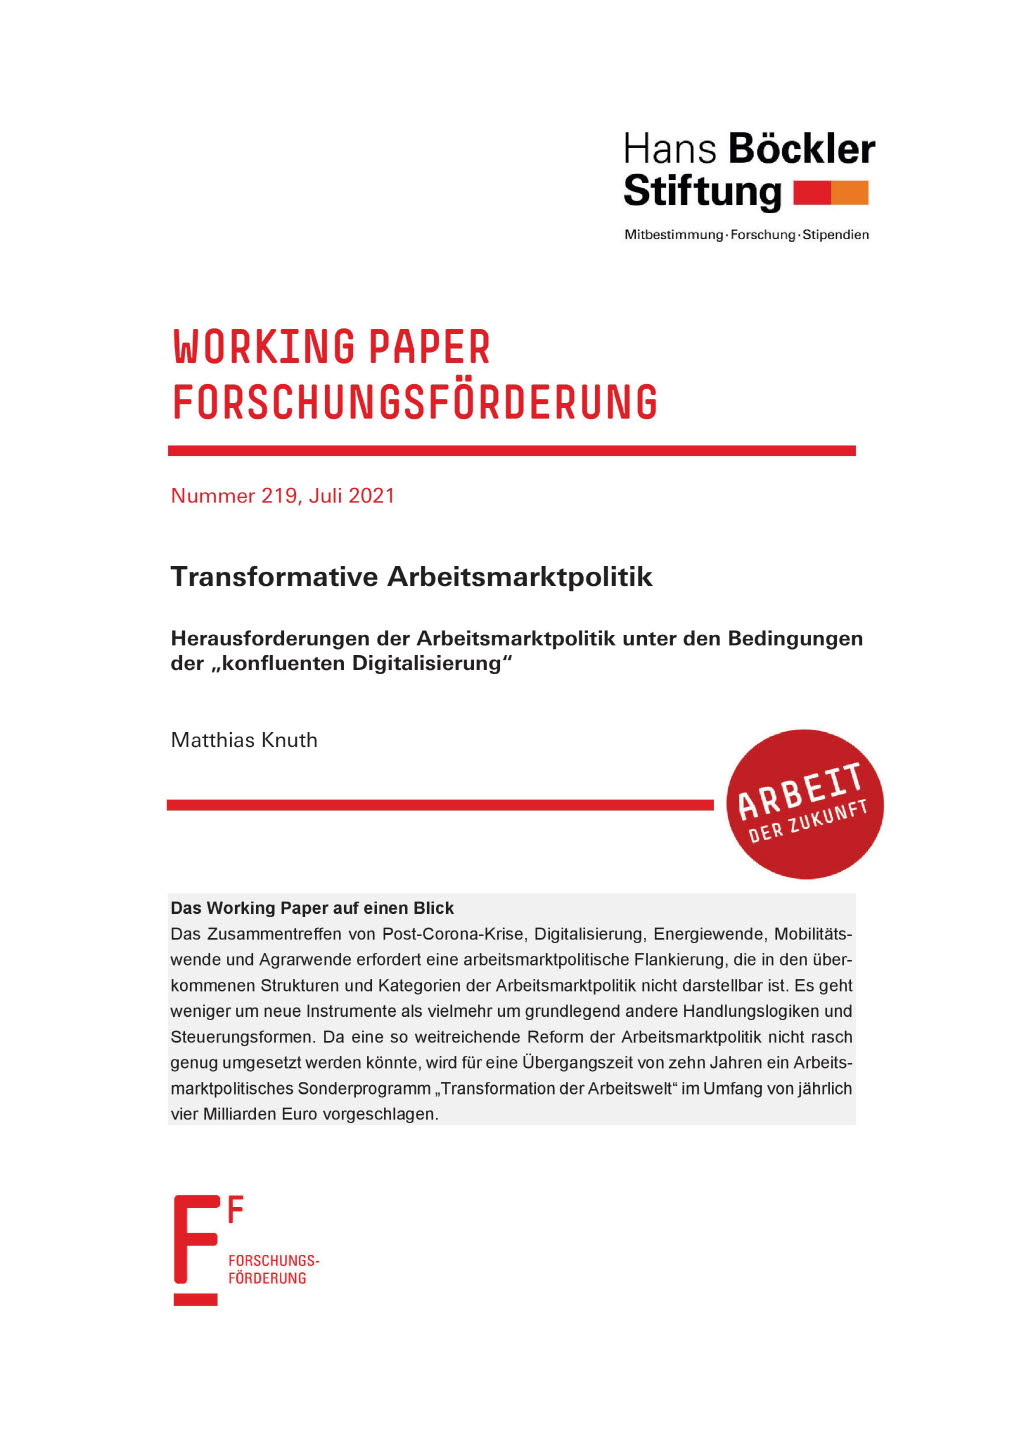 Transformative Arbeitsmarktpolitik